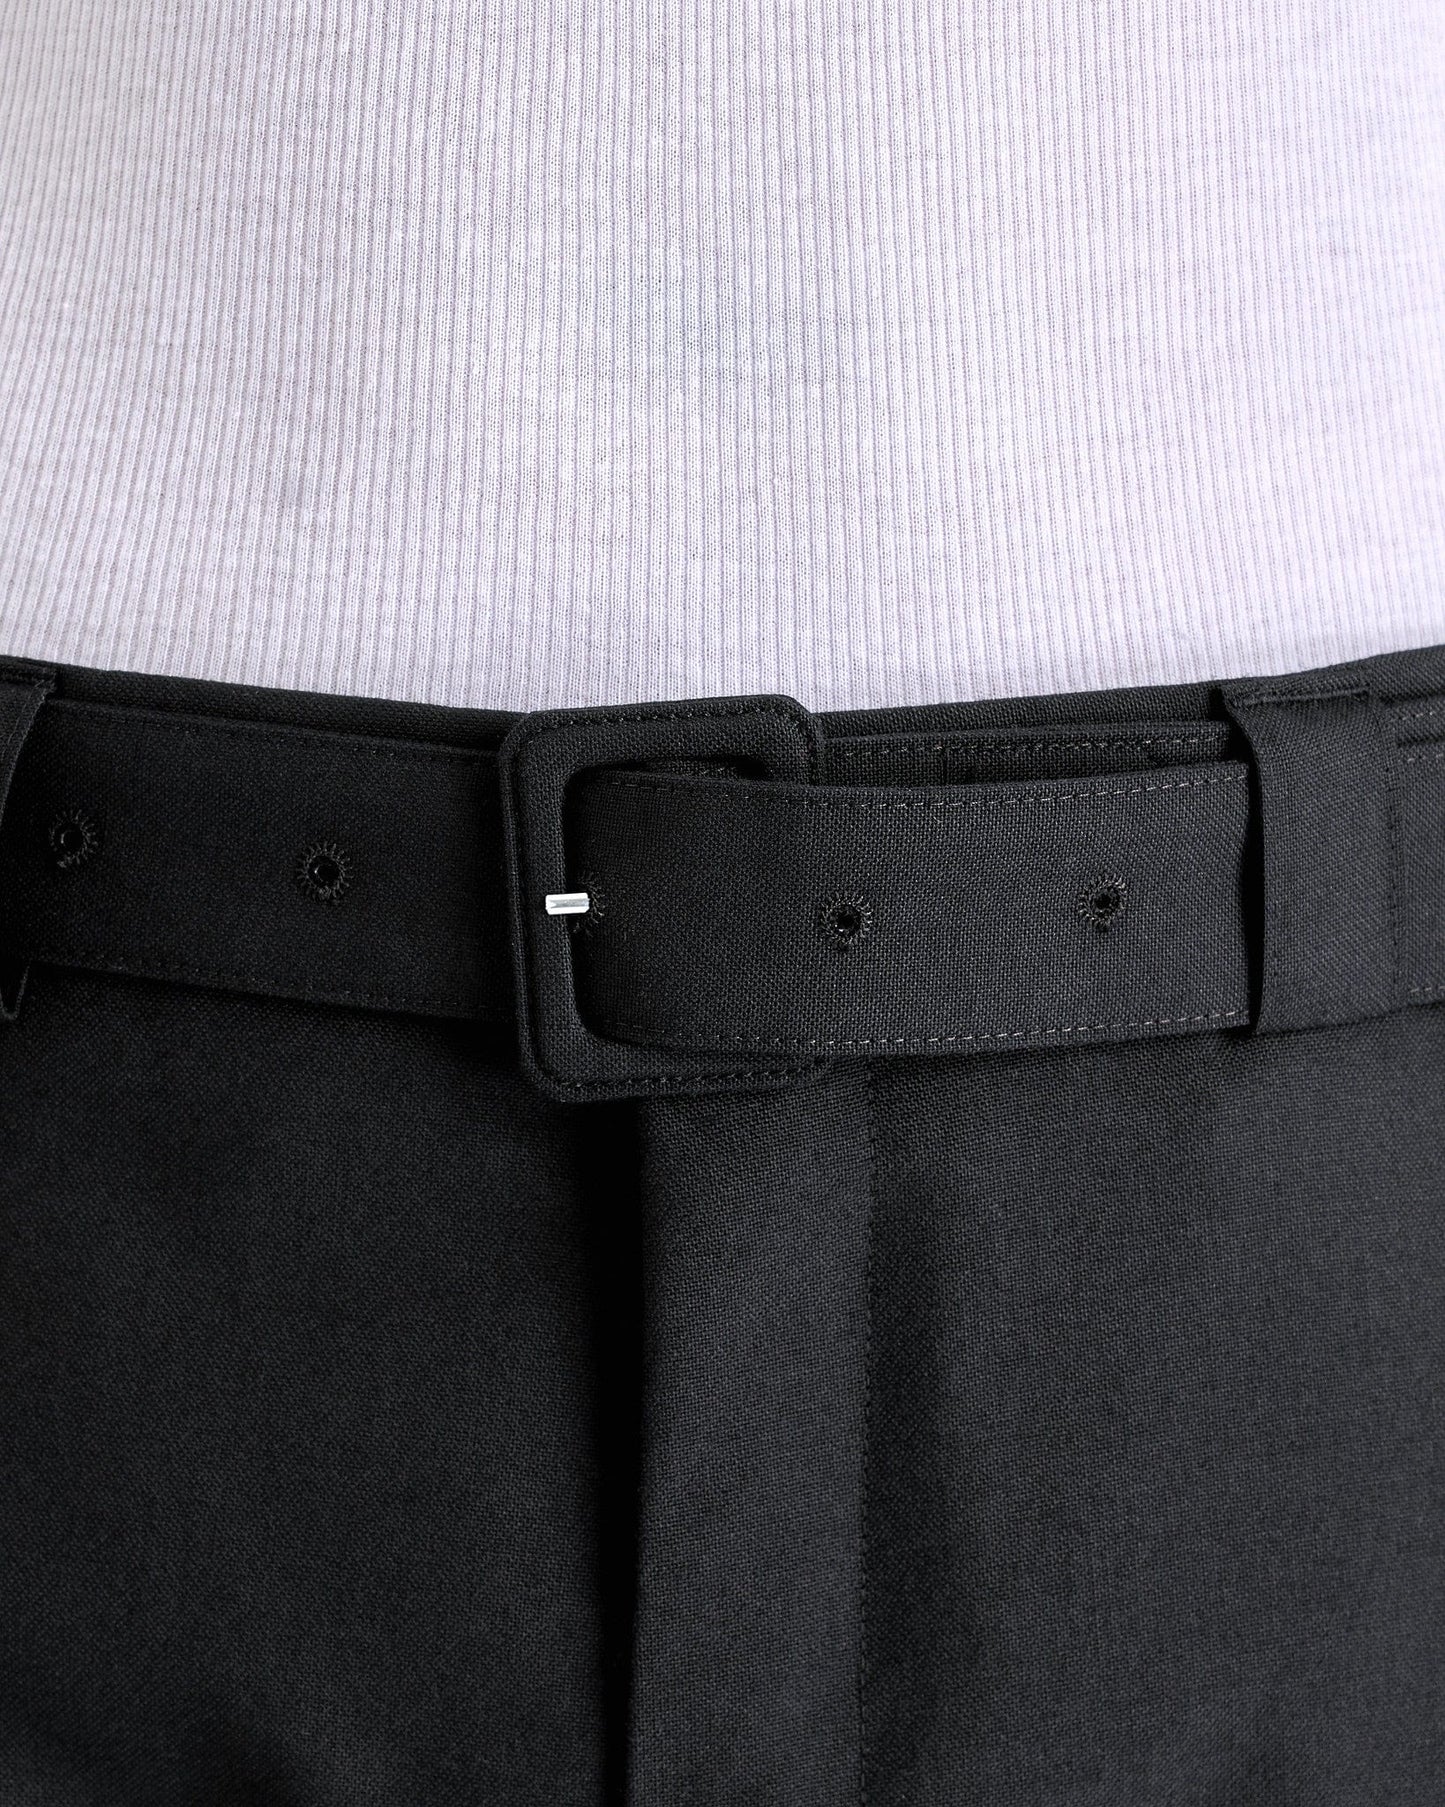 Dries Van Noten Men's Pants Paulson Pants in Black